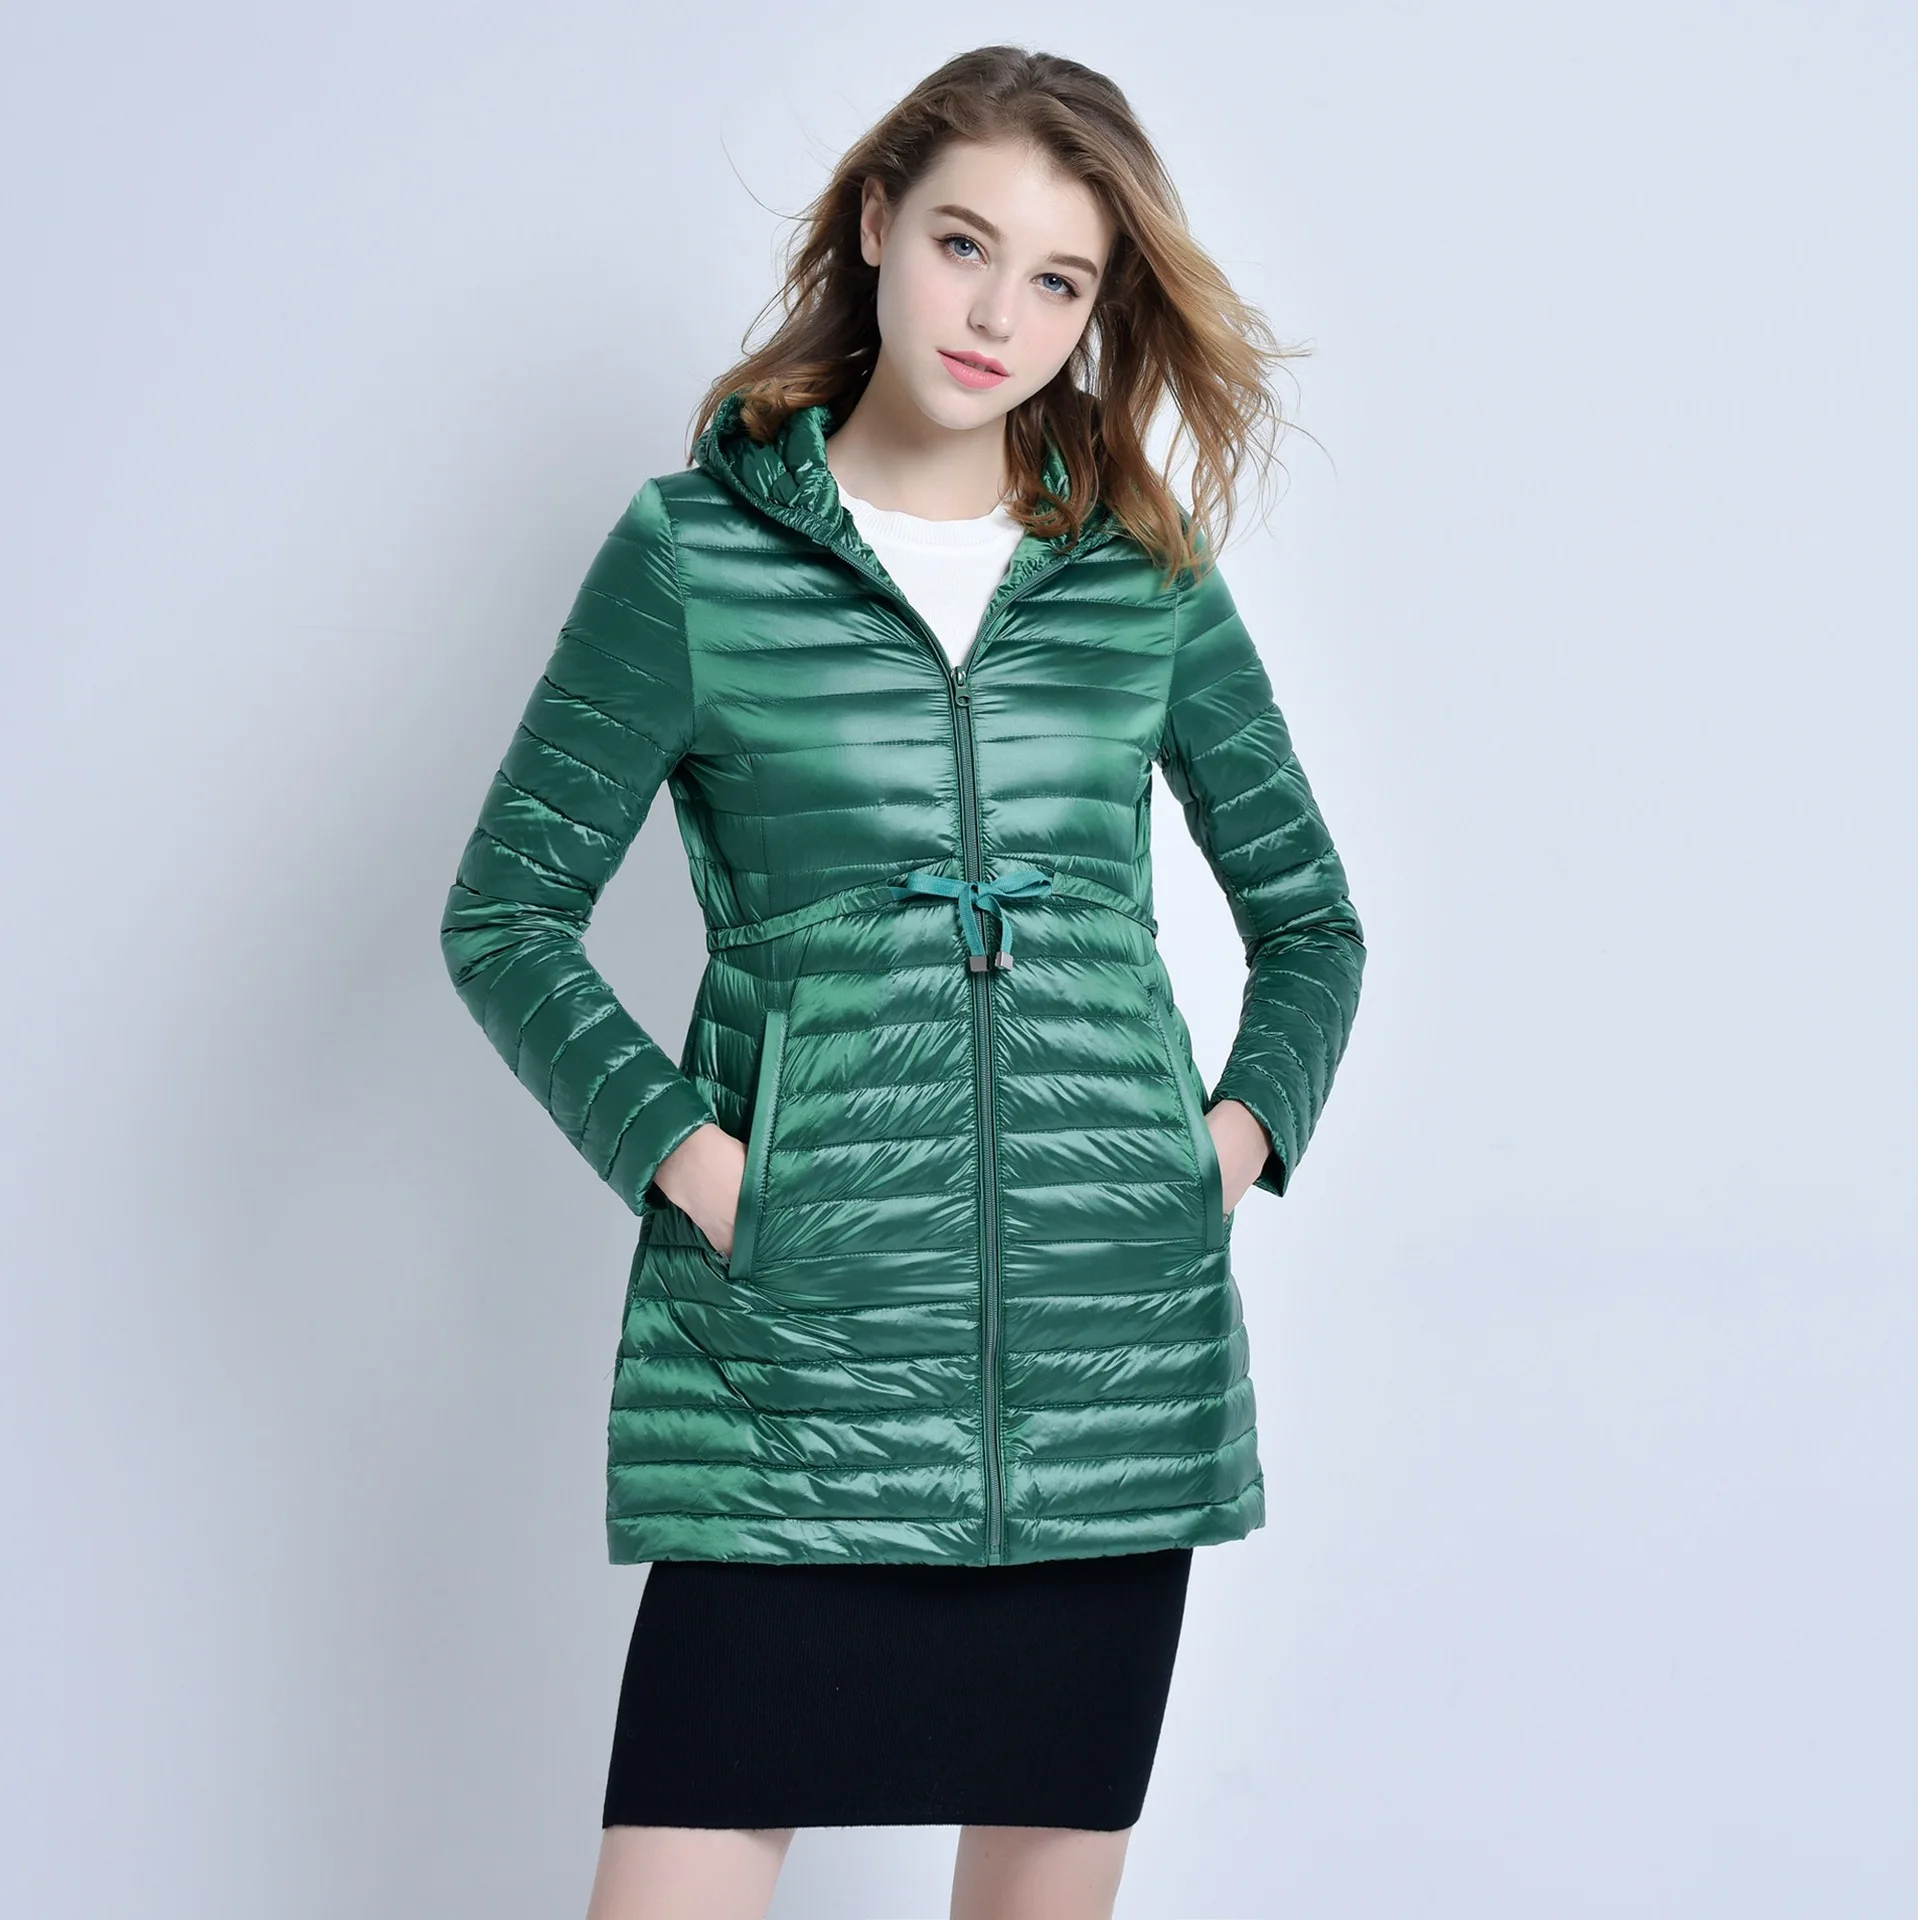 Civichic Горячая Мода S-XXXL женщина легкая зимняя куртка-пуховик Тонкий с капюшоном поясом пальто леди средней длины тонкие теплые Гага Подпушка уличная одежда dc547 - Цвет: Green